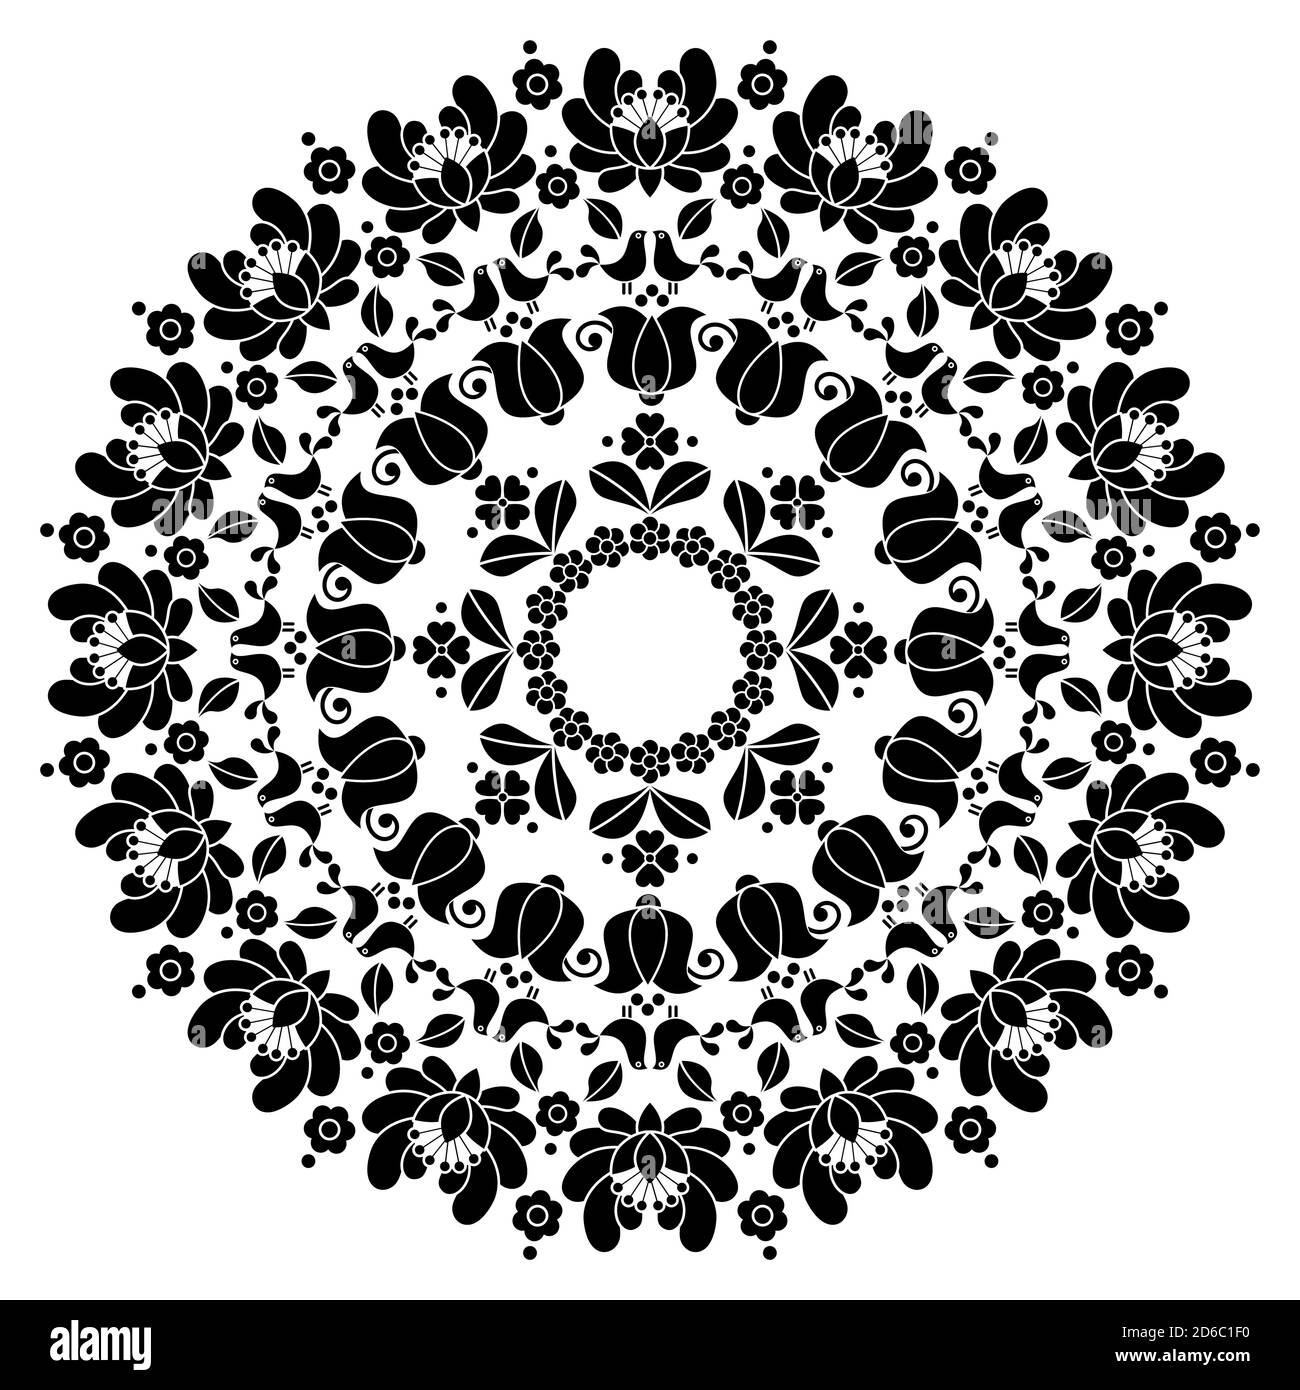 Kalocsai motif floral hongrois à motif vectoriel Mandala - motif rond Inspiré par l'art populaire de Hongrie Illustration de Vecteur